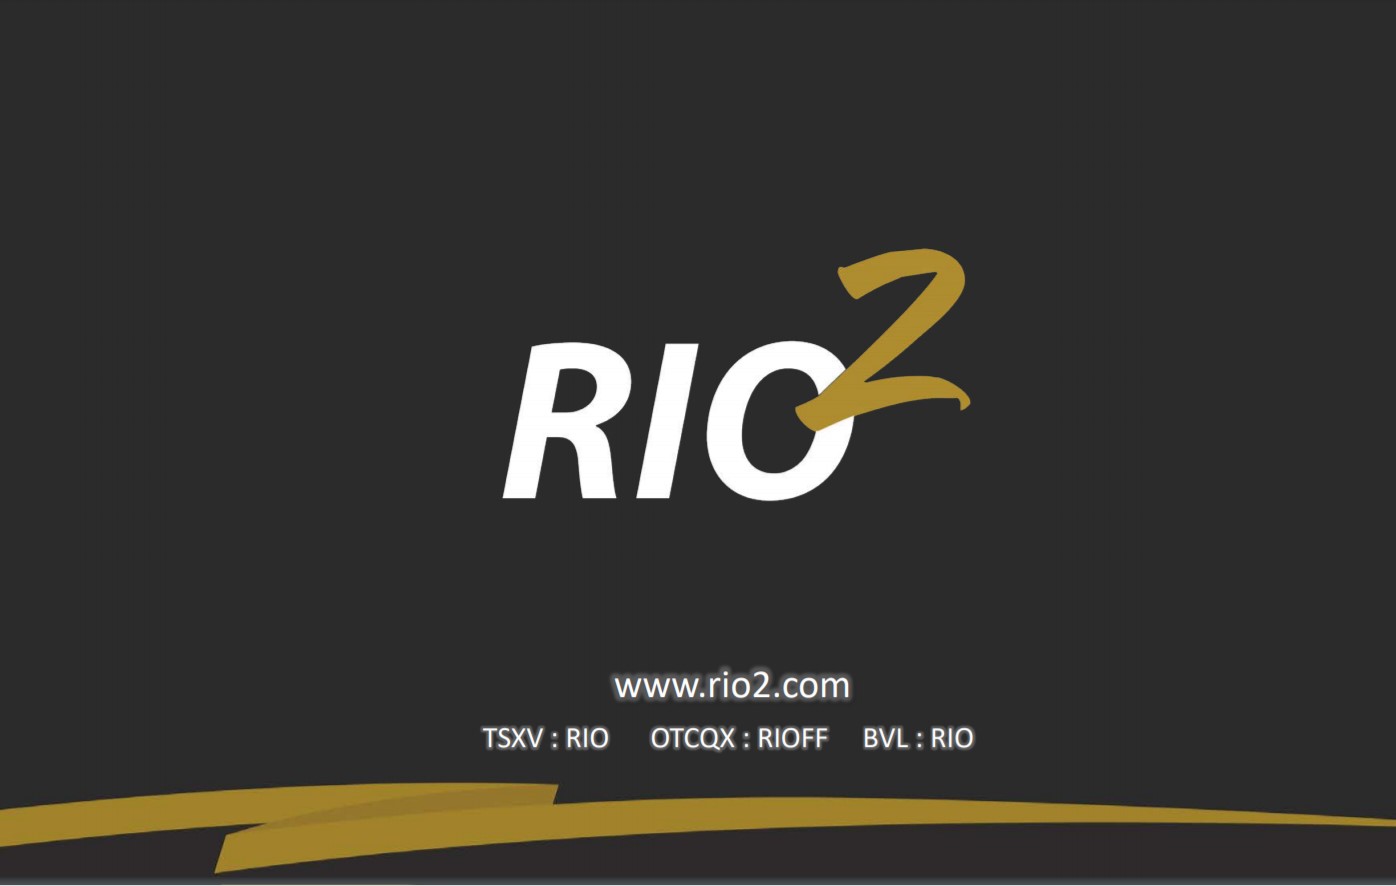 Rio2 ejecutando planes de optimización Fenix ​​Gold con la compra de infraestructura estratégica